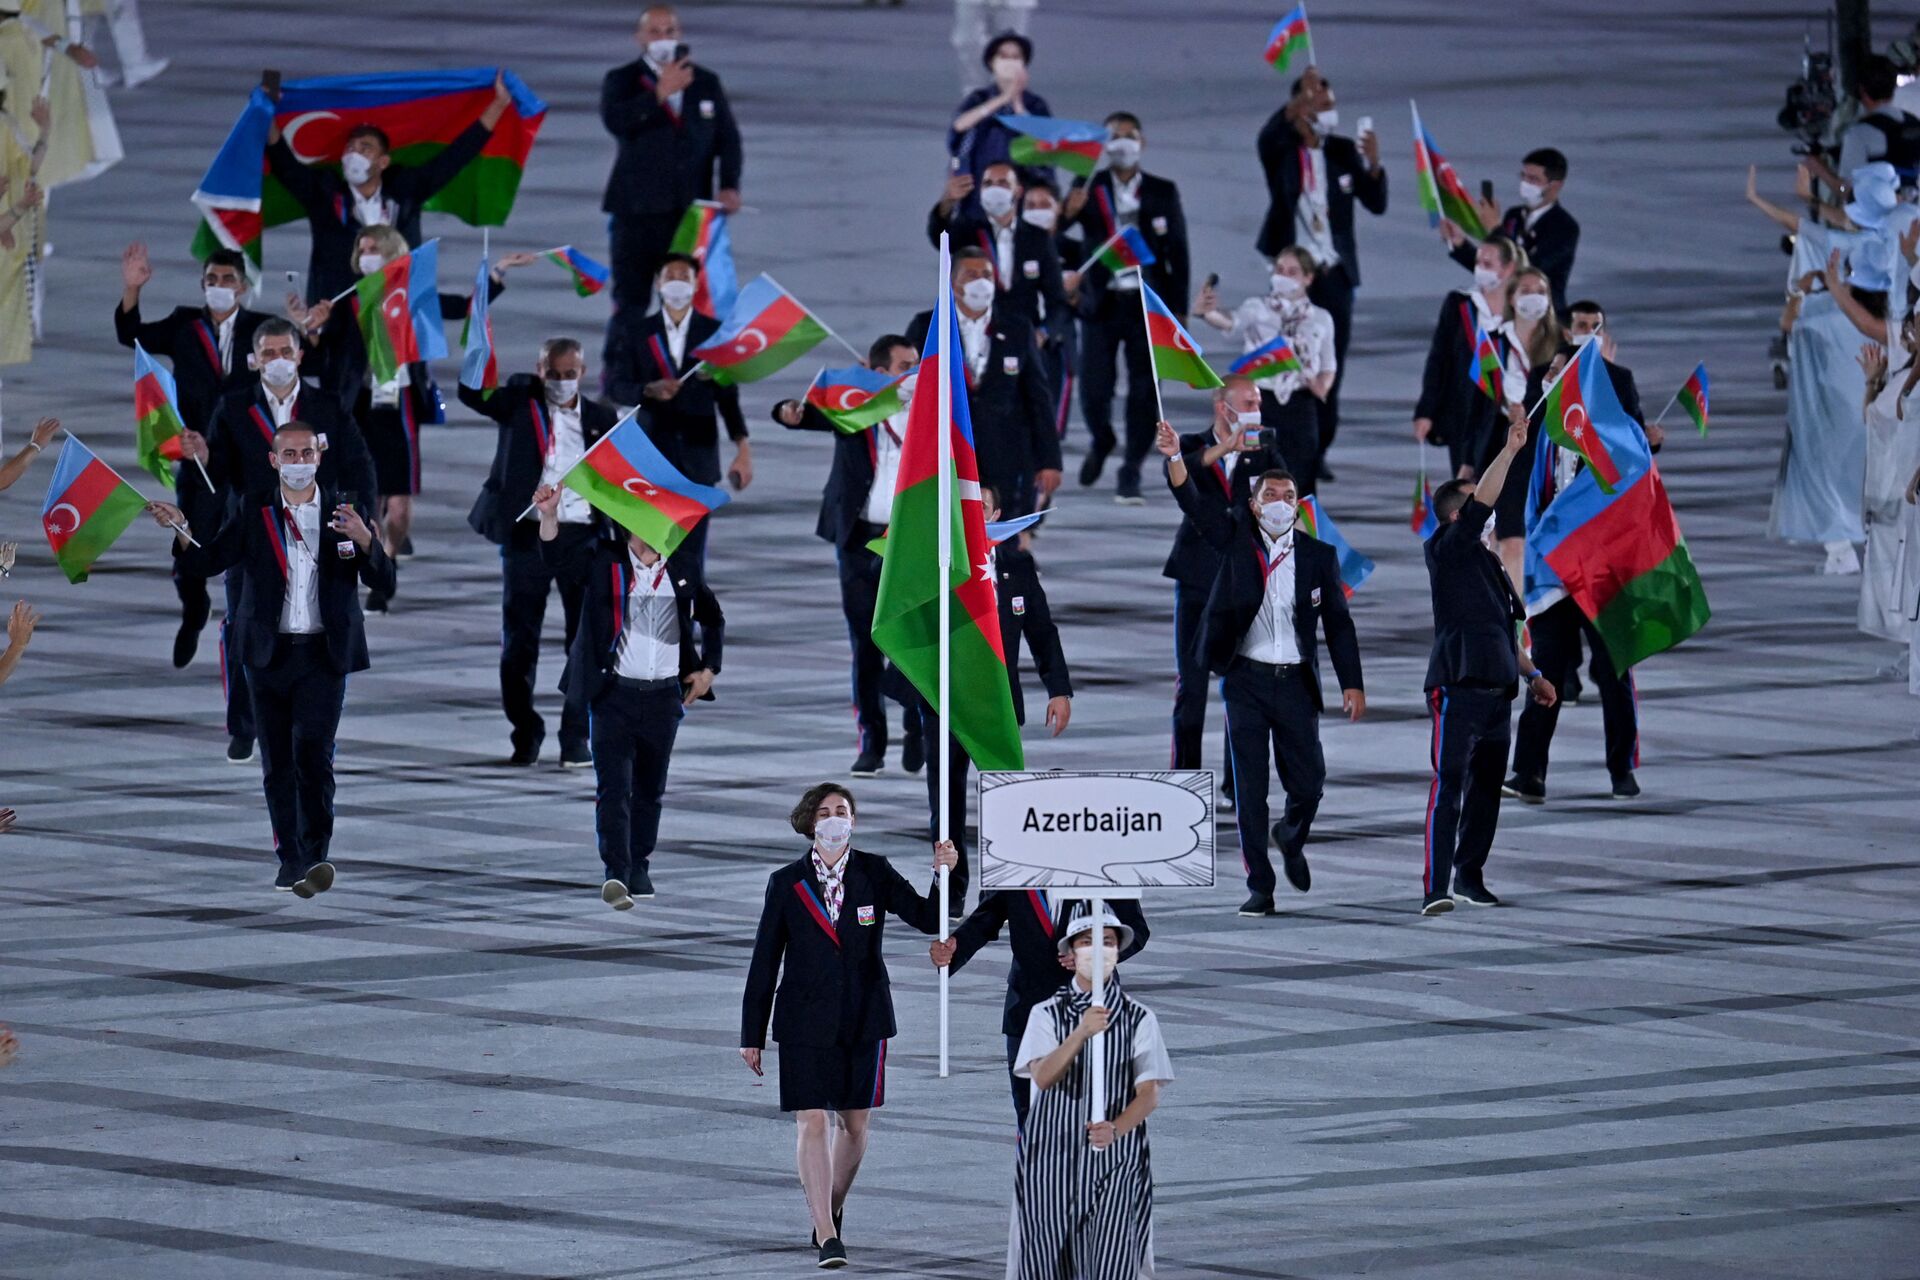 Азербайджанские атлеты прошли в параде на открытии Олимпиады-2020 в Токио - Sputnik Азербайджан, 1920, 23.07.2021